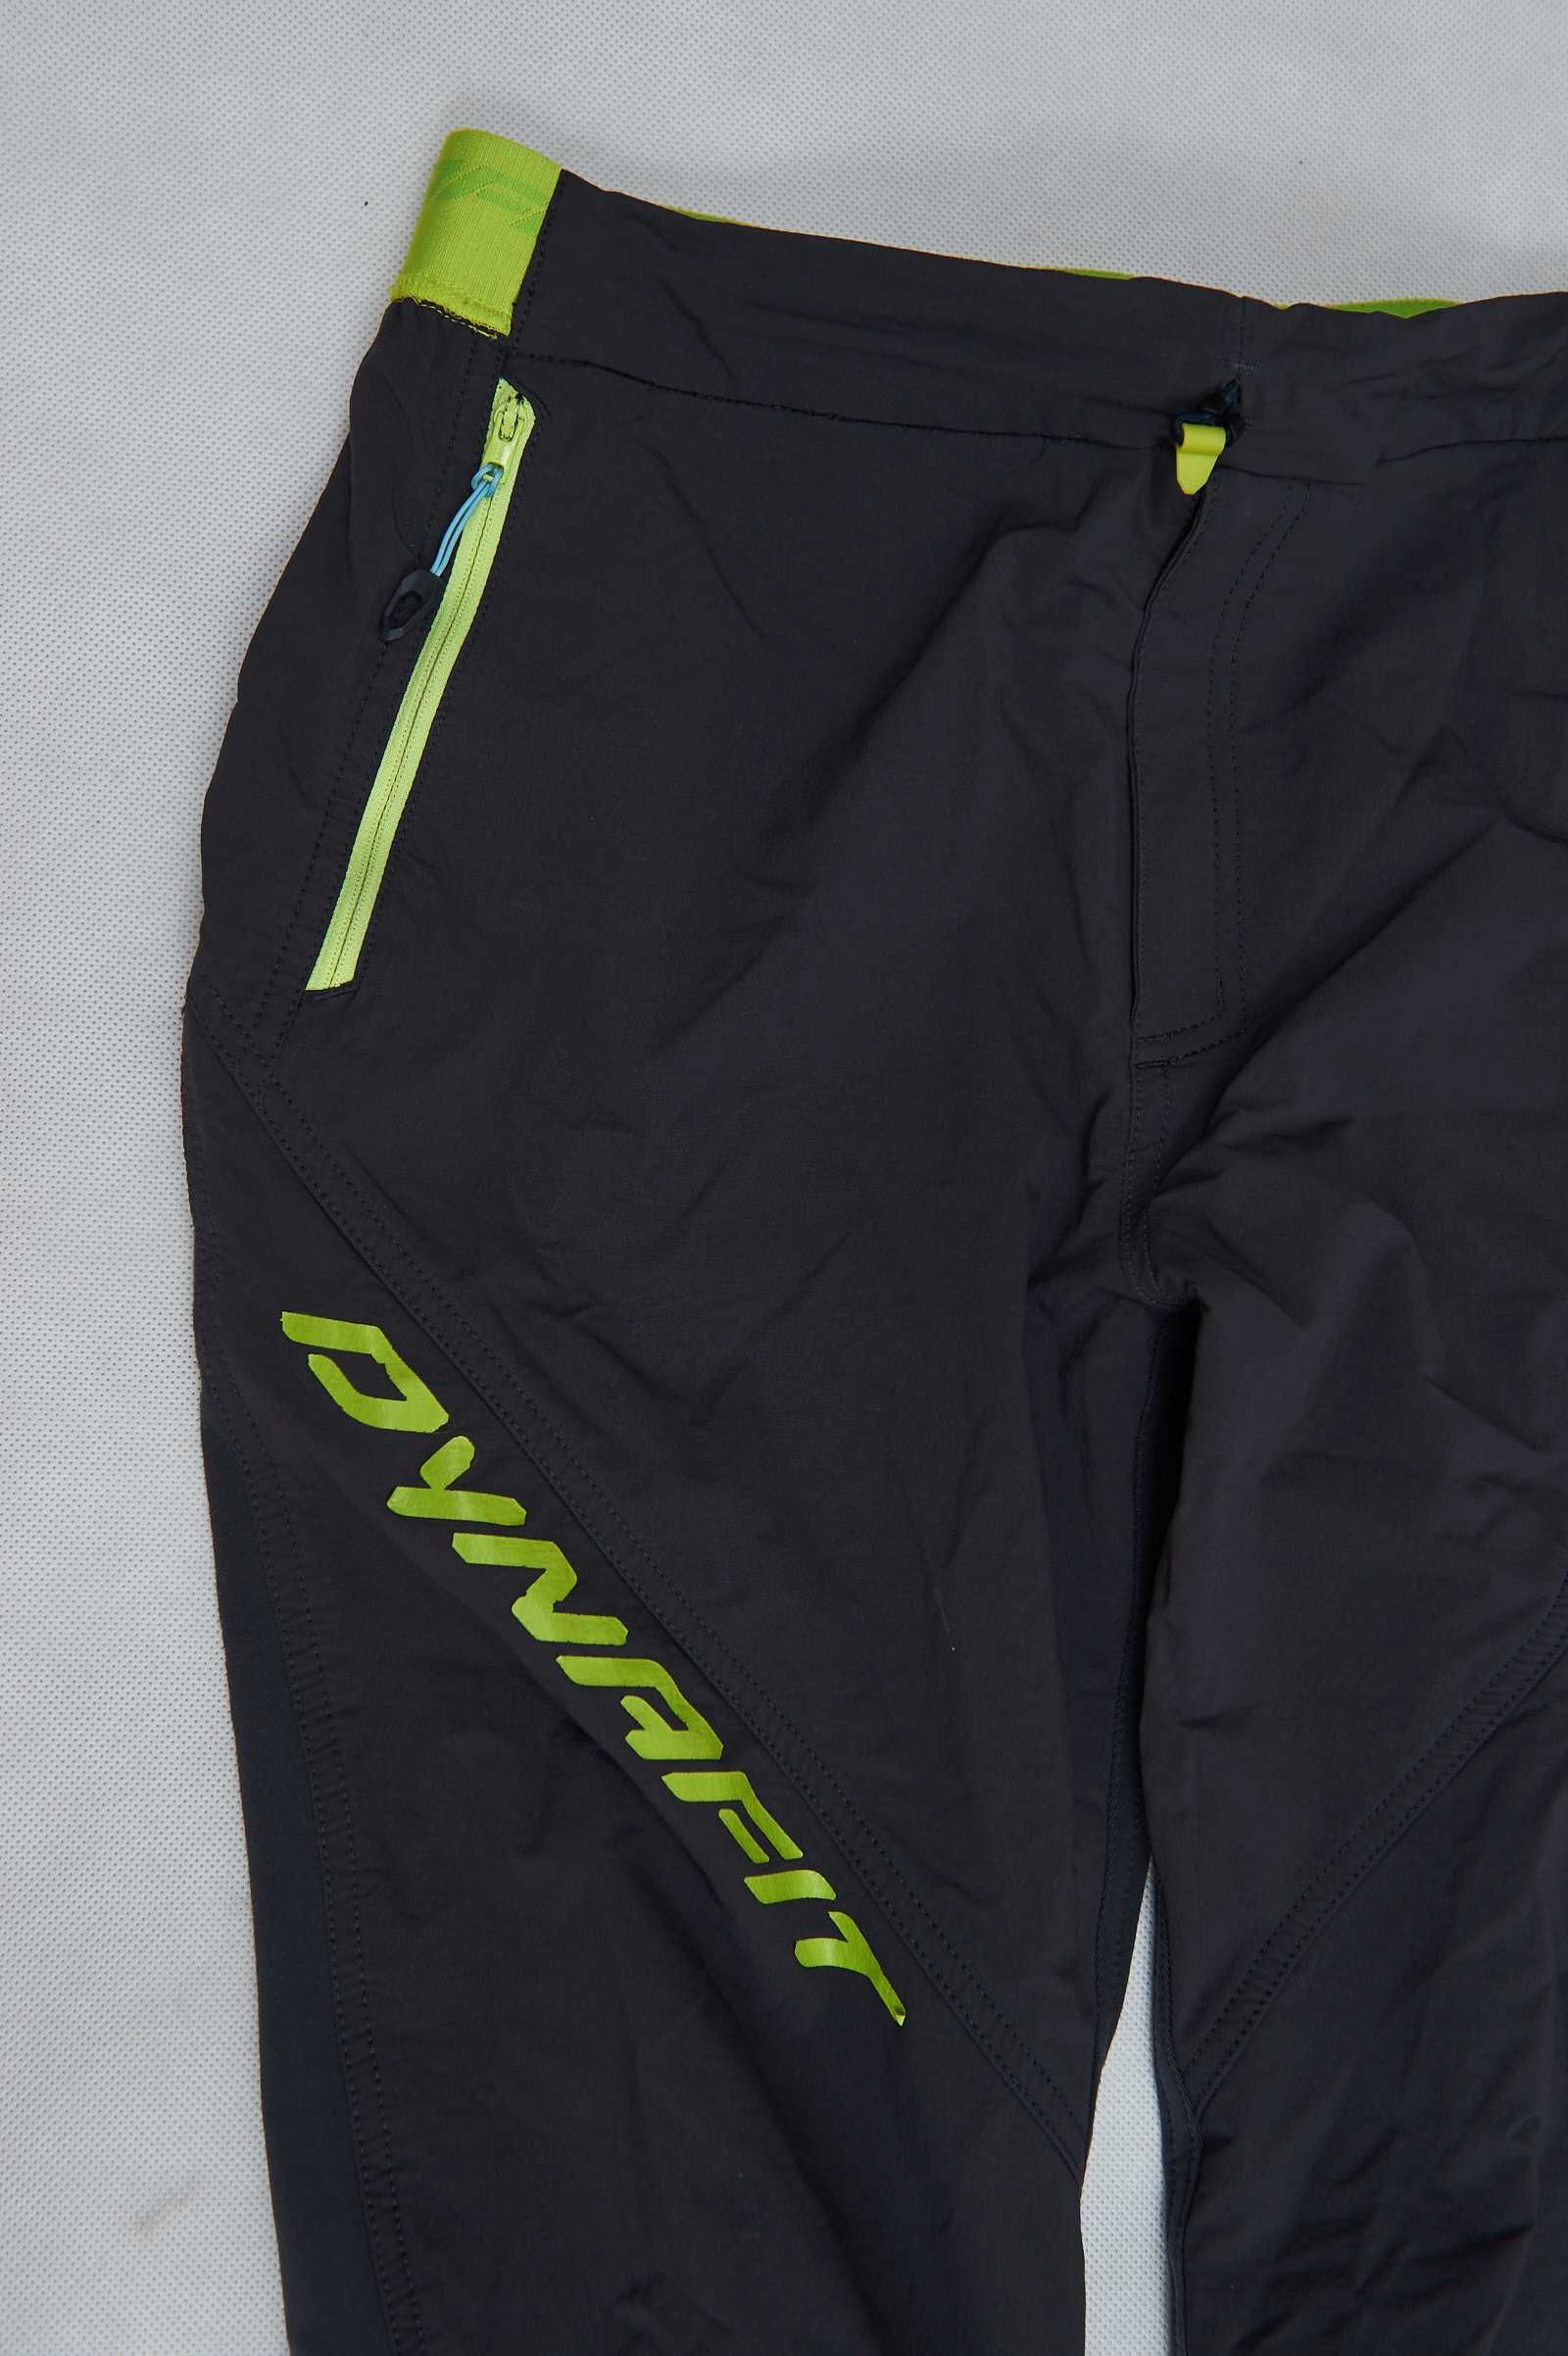 Dynafit Speedfit DST spodnie trekkingowe size M 48